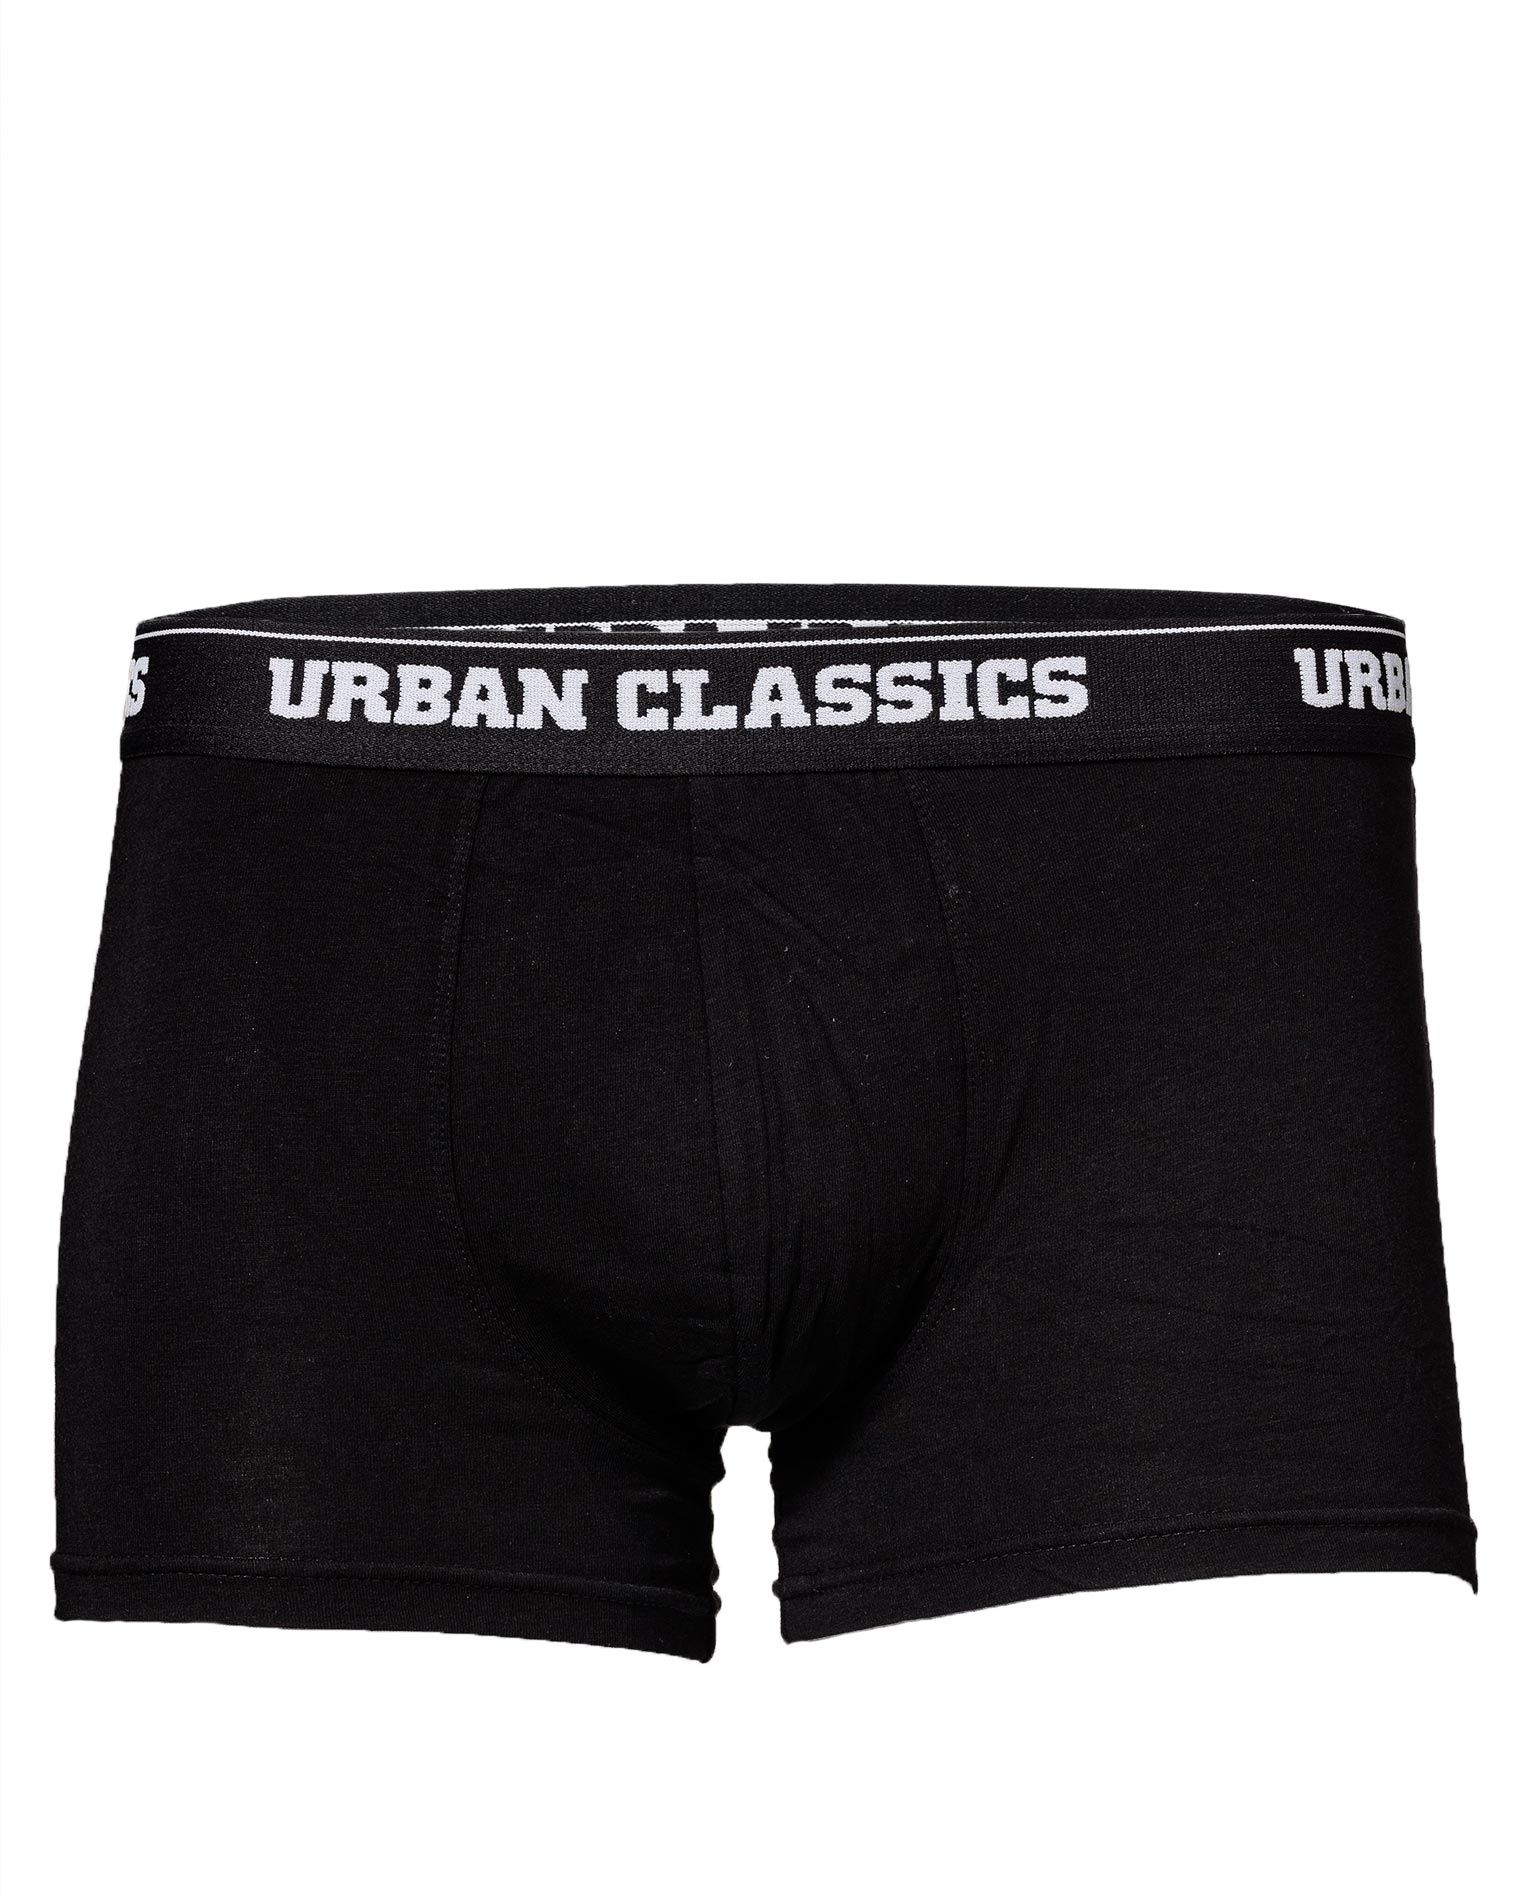 black boxer trunks